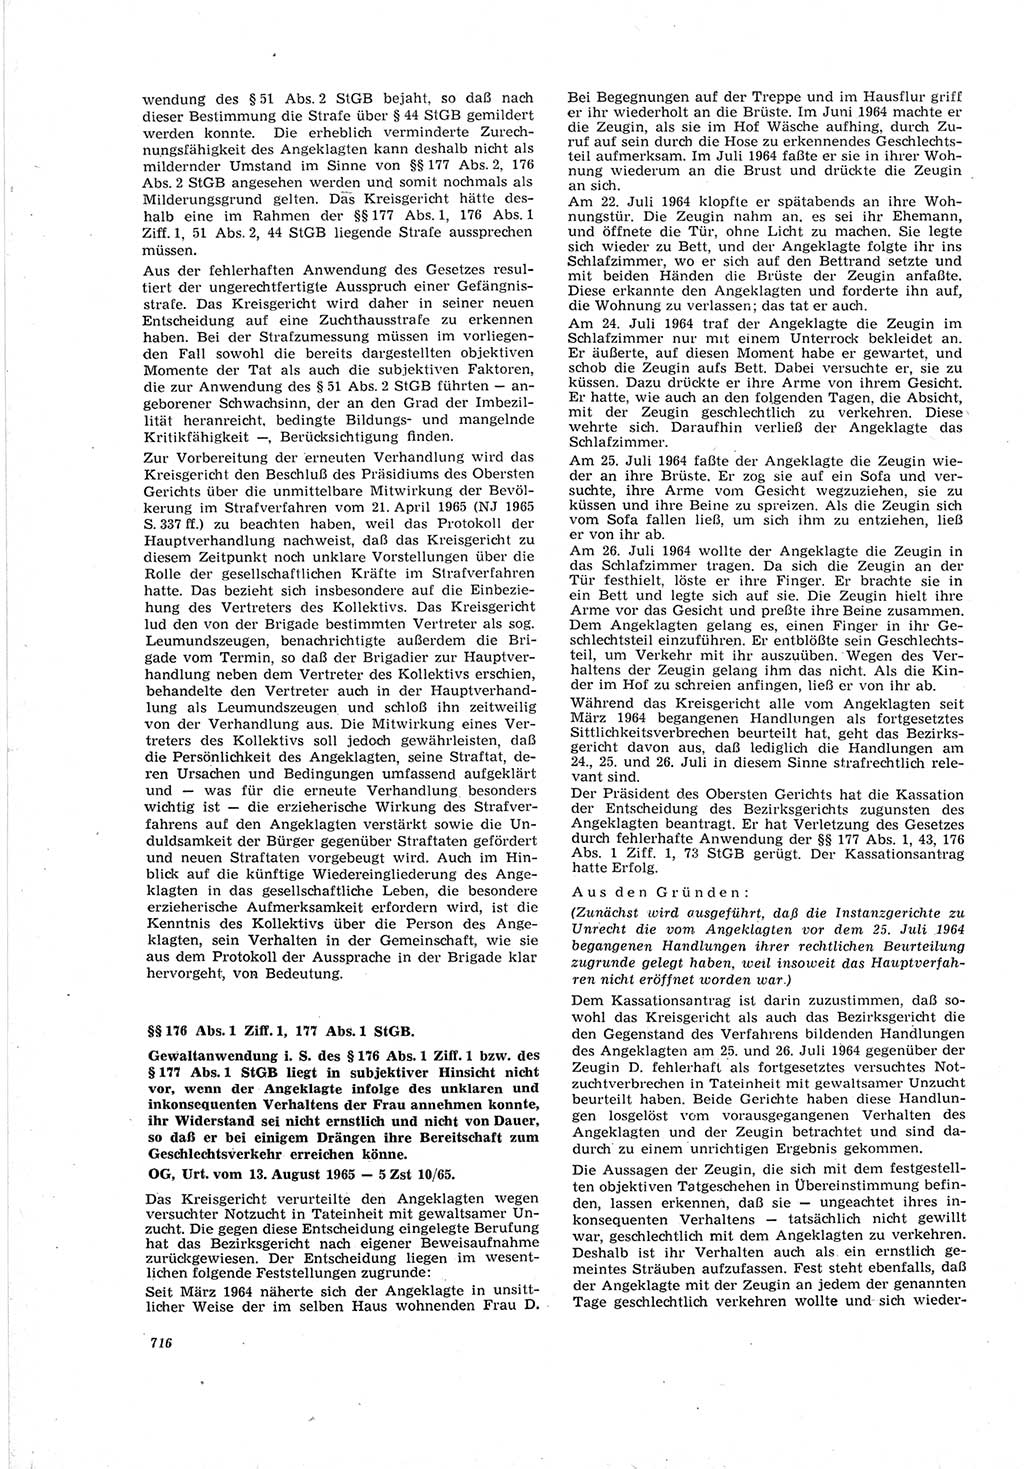 Neue Justiz (NJ), Zeitschrift für Recht und Rechtswissenschaft [Deutsche Demokratische Republik (DDR)], 19. Jahrgang 1965, Seite 716 (NJ DDR 1965, S. 716)